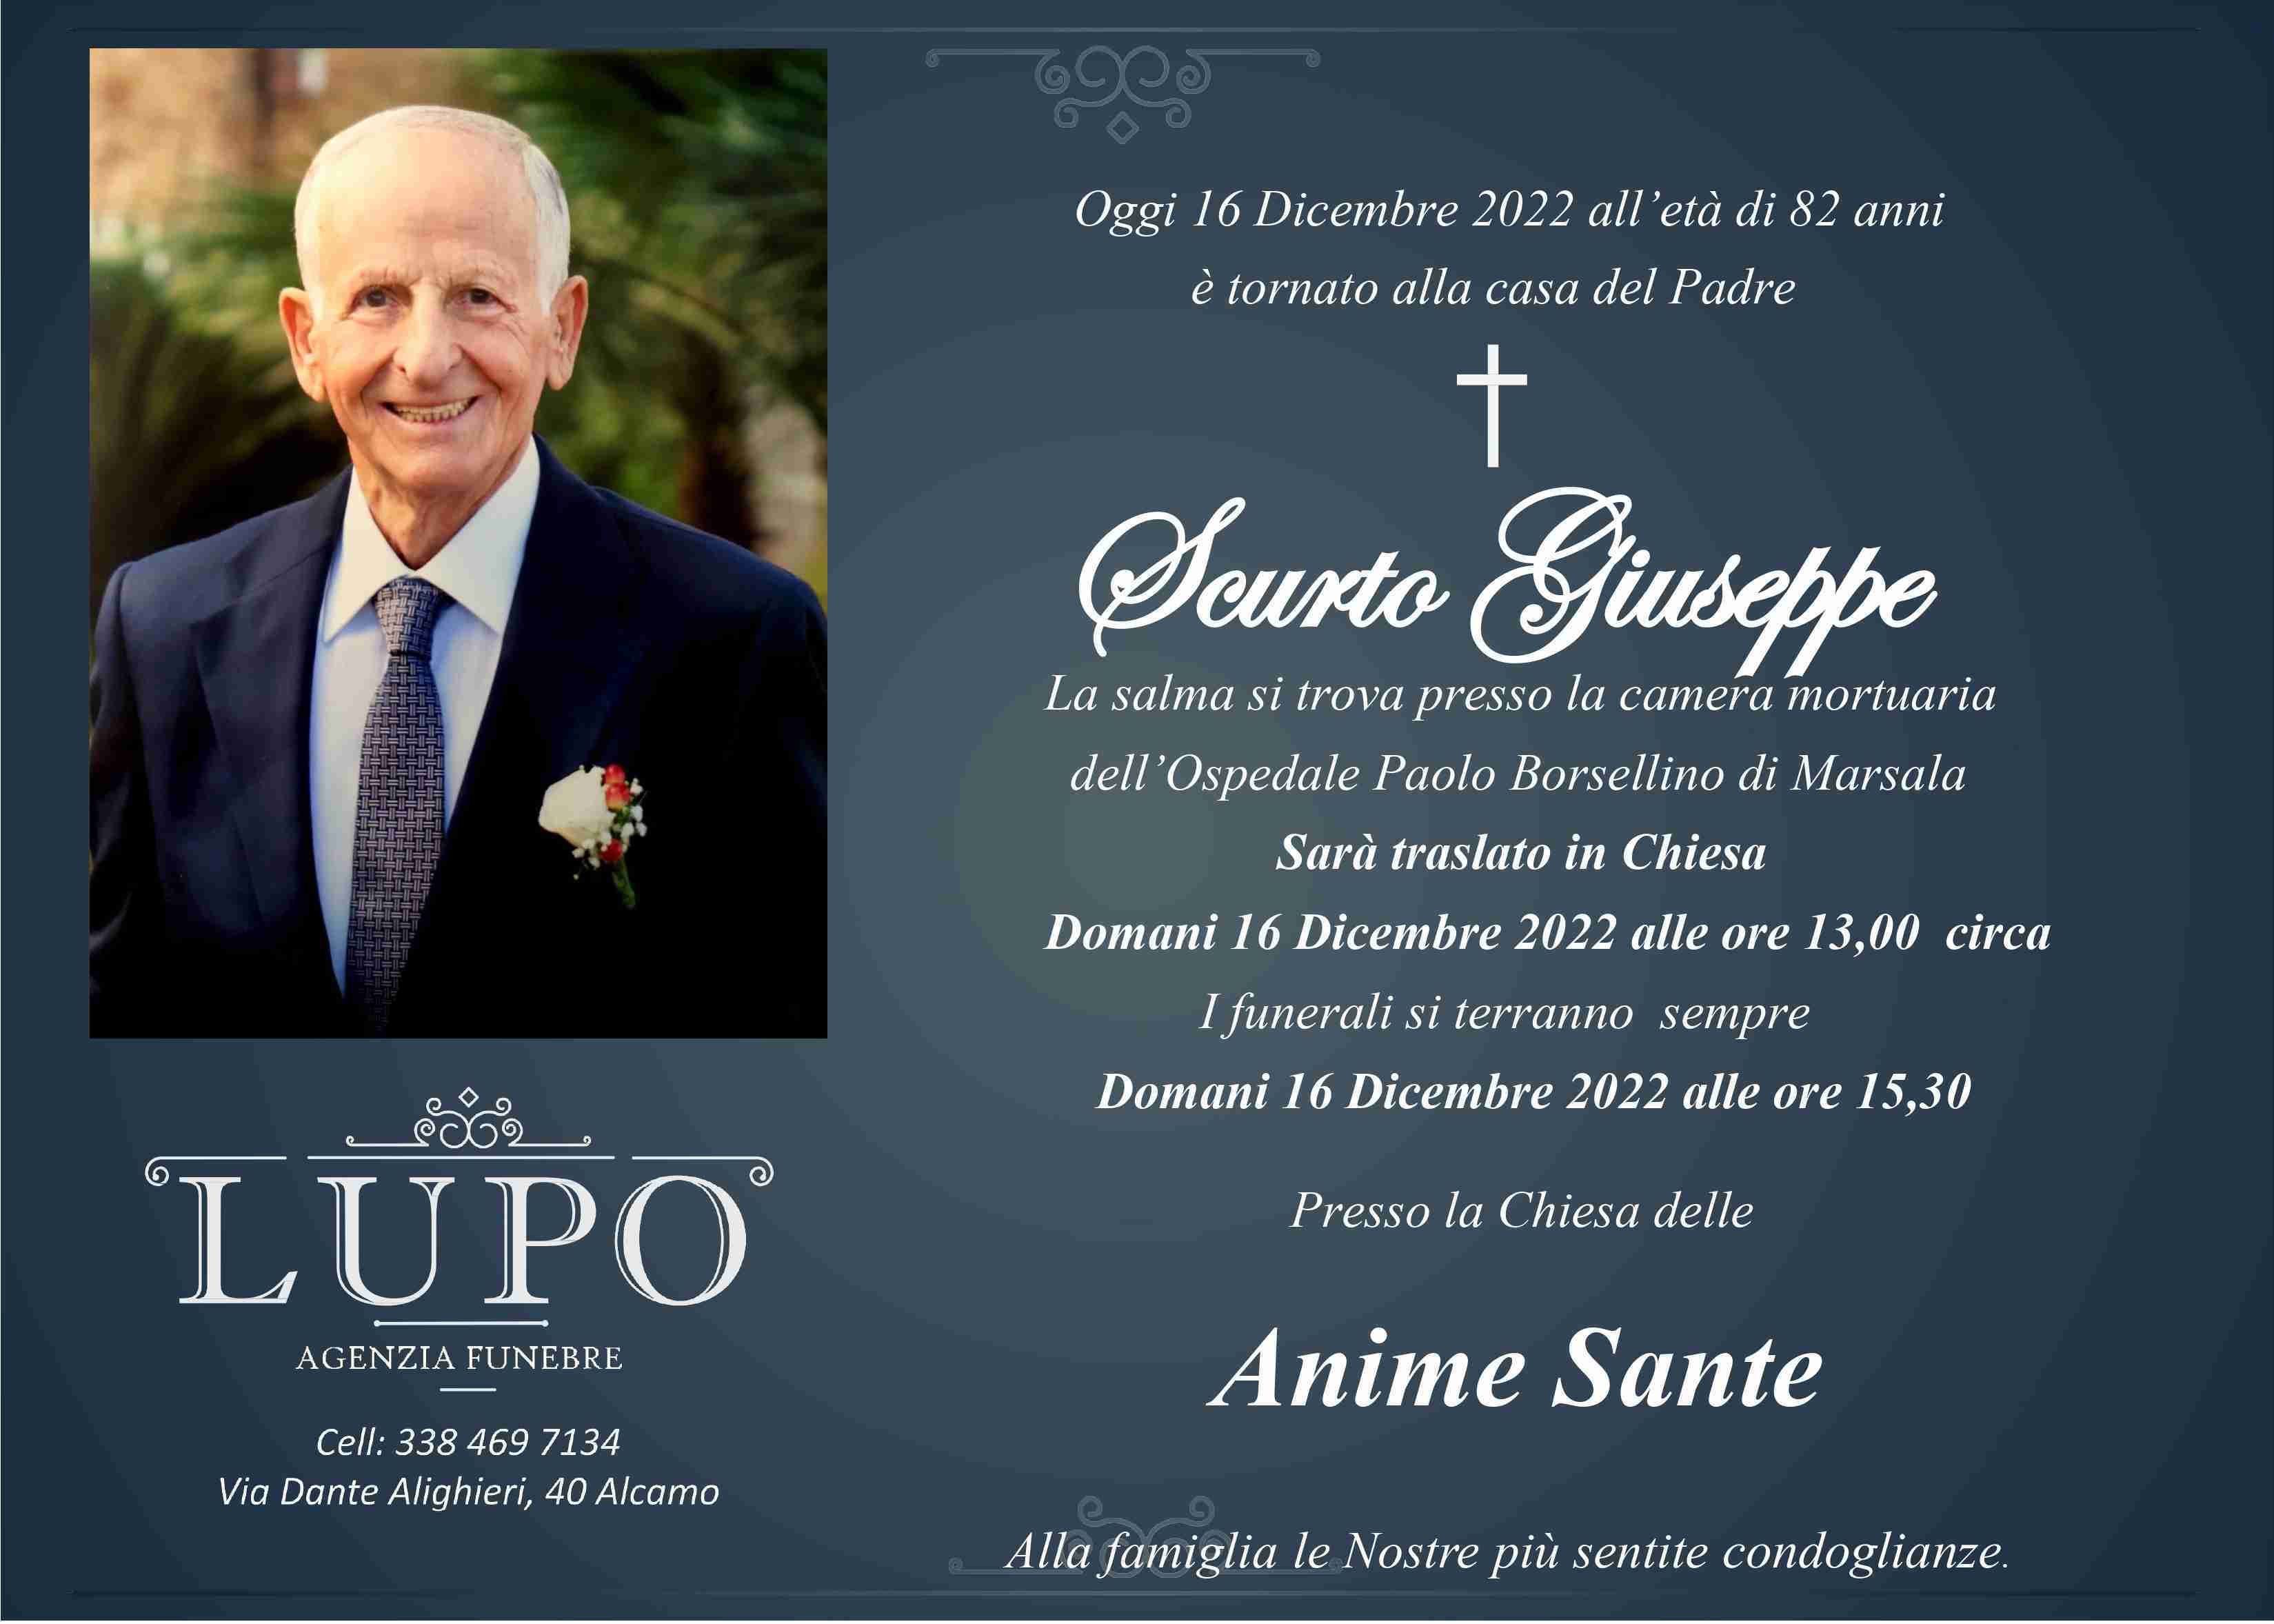 Giuseppe Scurto